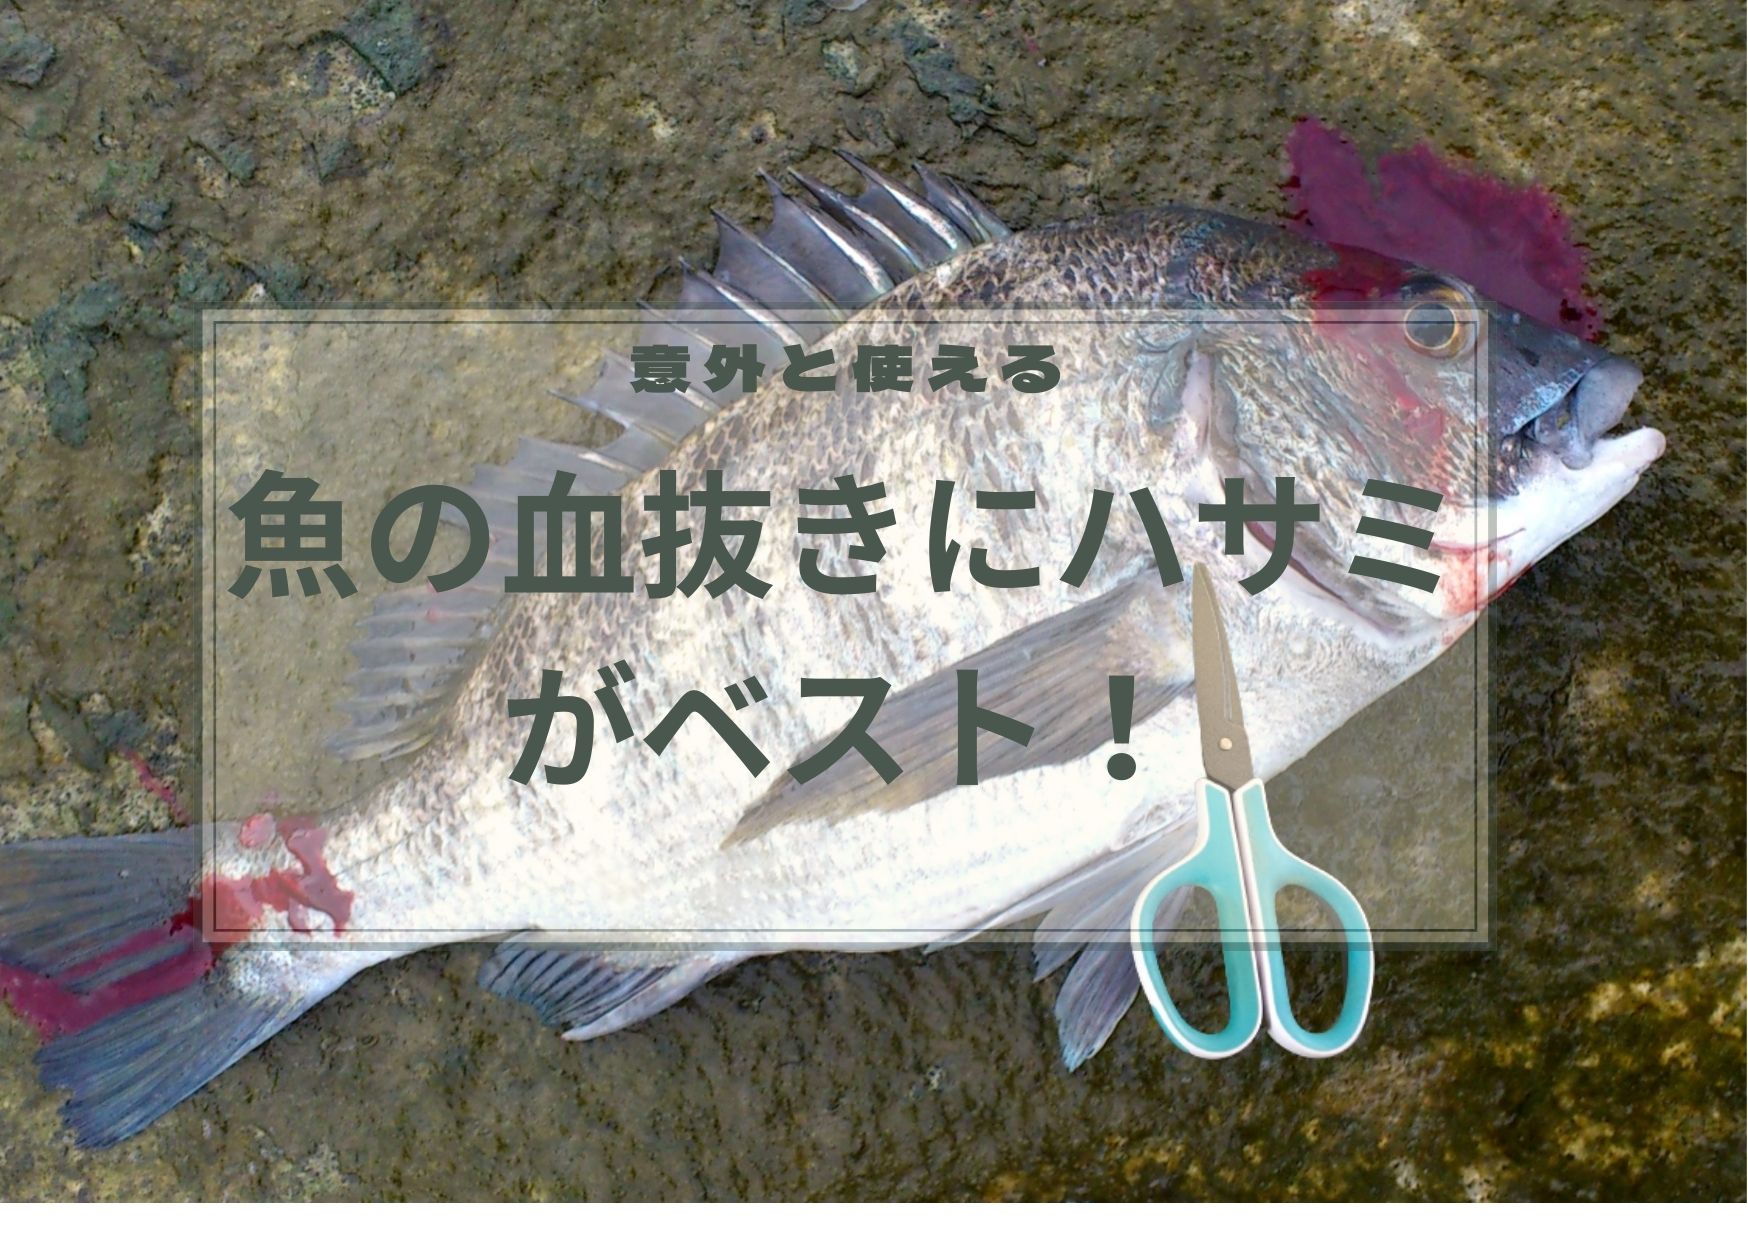 魚の血抜きはハサミがベスト！血抜き用ハサミでナイフは卒業です。 – hirame blog